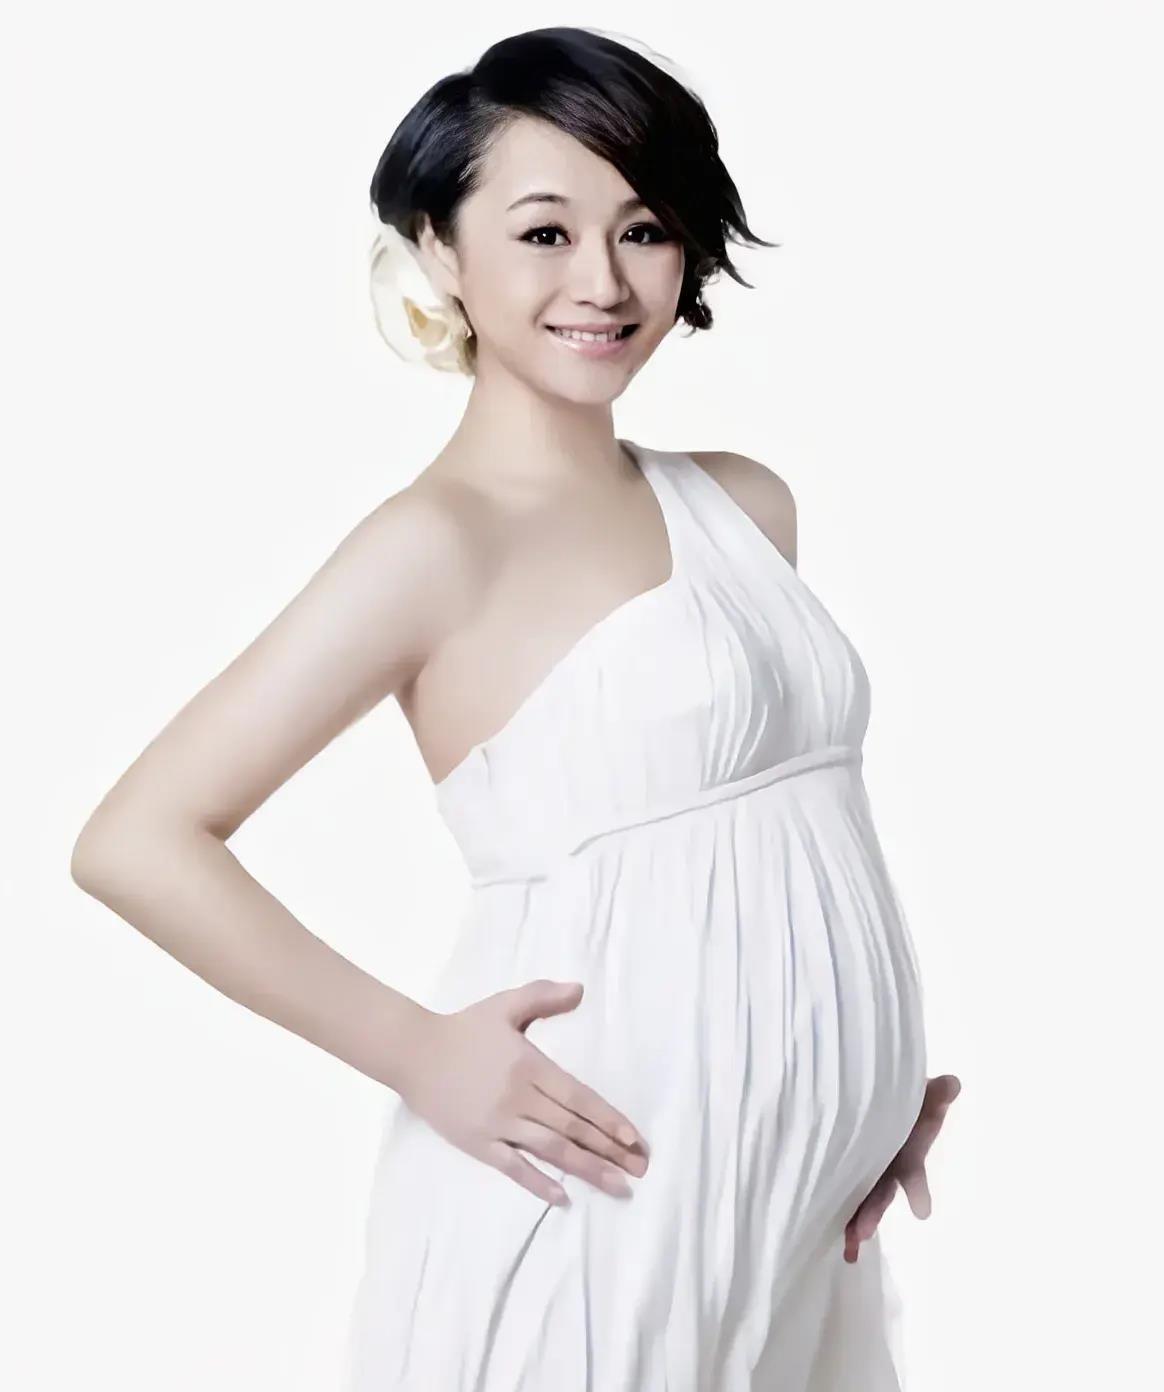 戚薇,吴倩,林心如孕照也太美了!32位女星怀孕照,你见过几个?